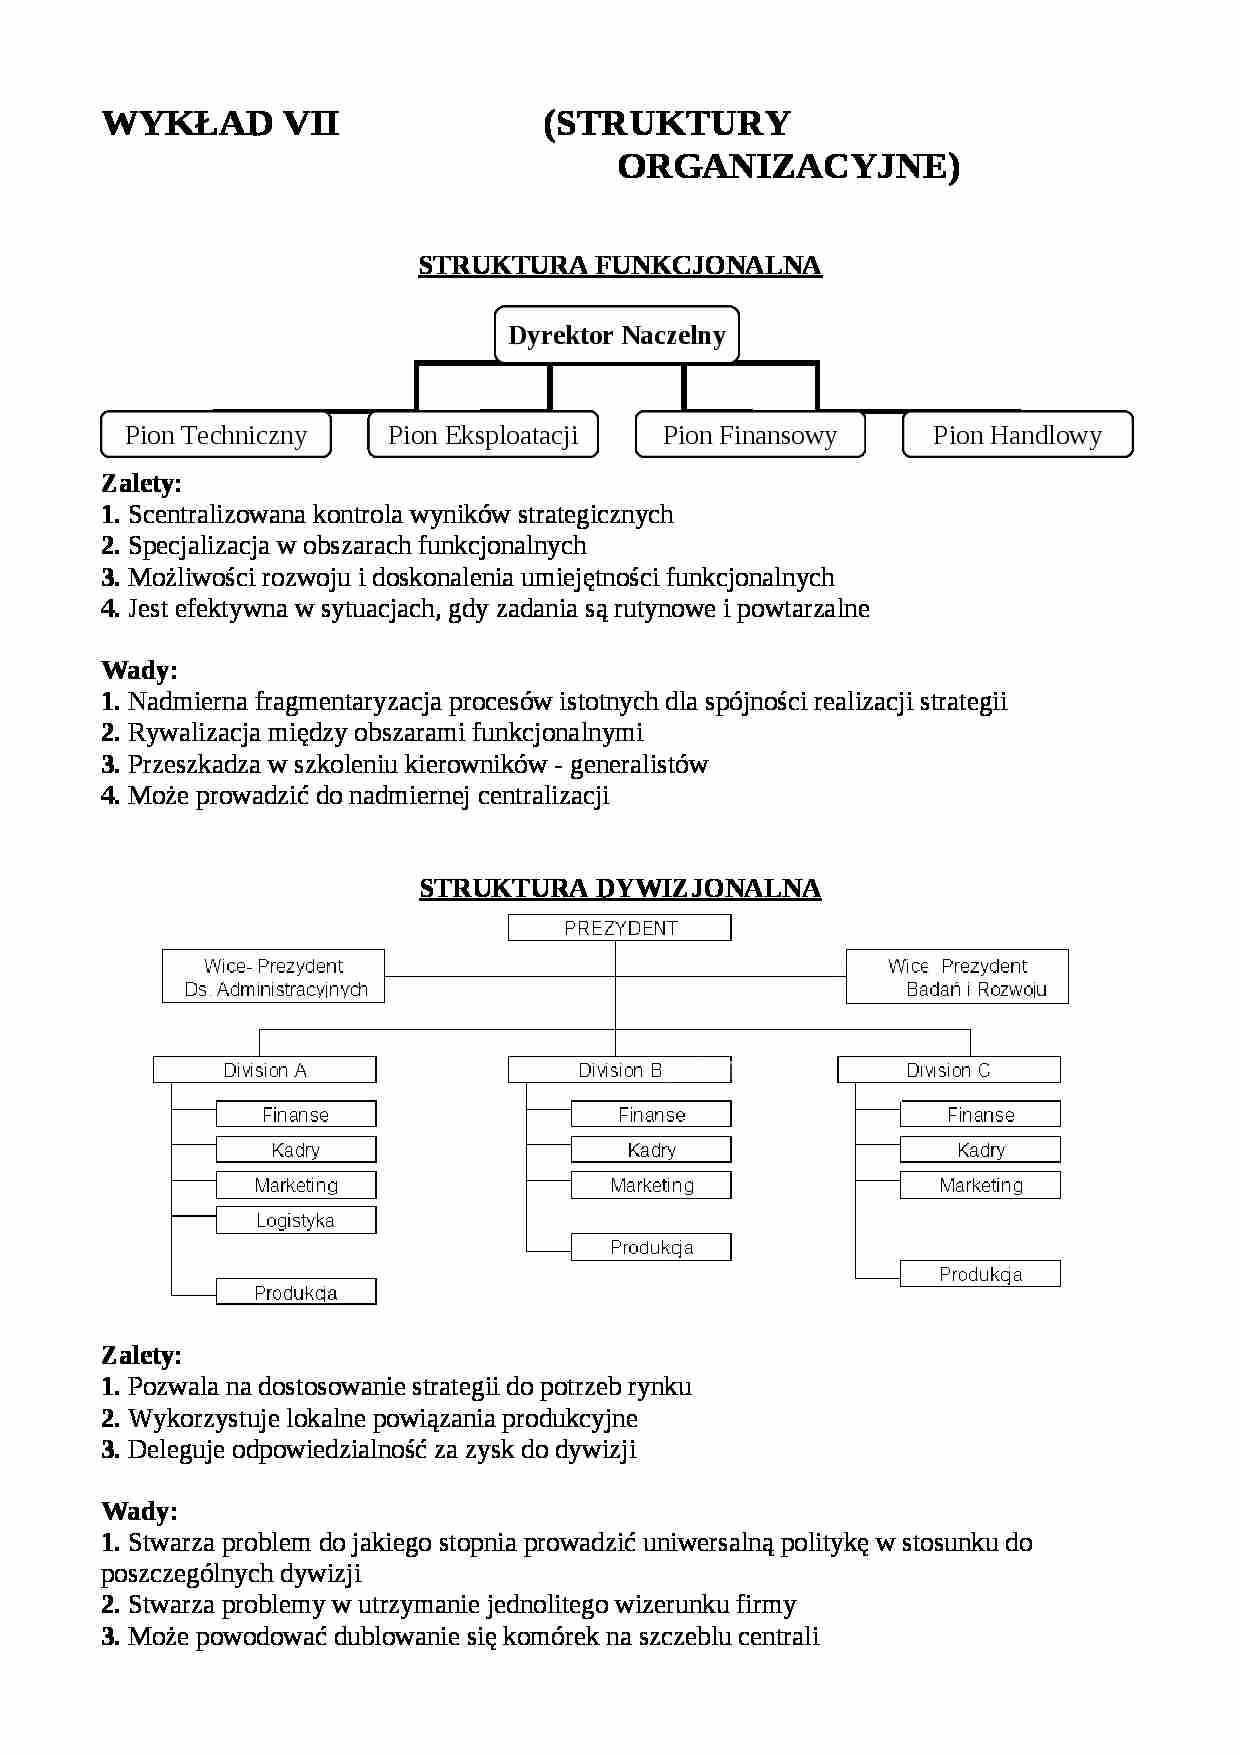 Struktury organizacyjne - wady i zalety  - strona 1